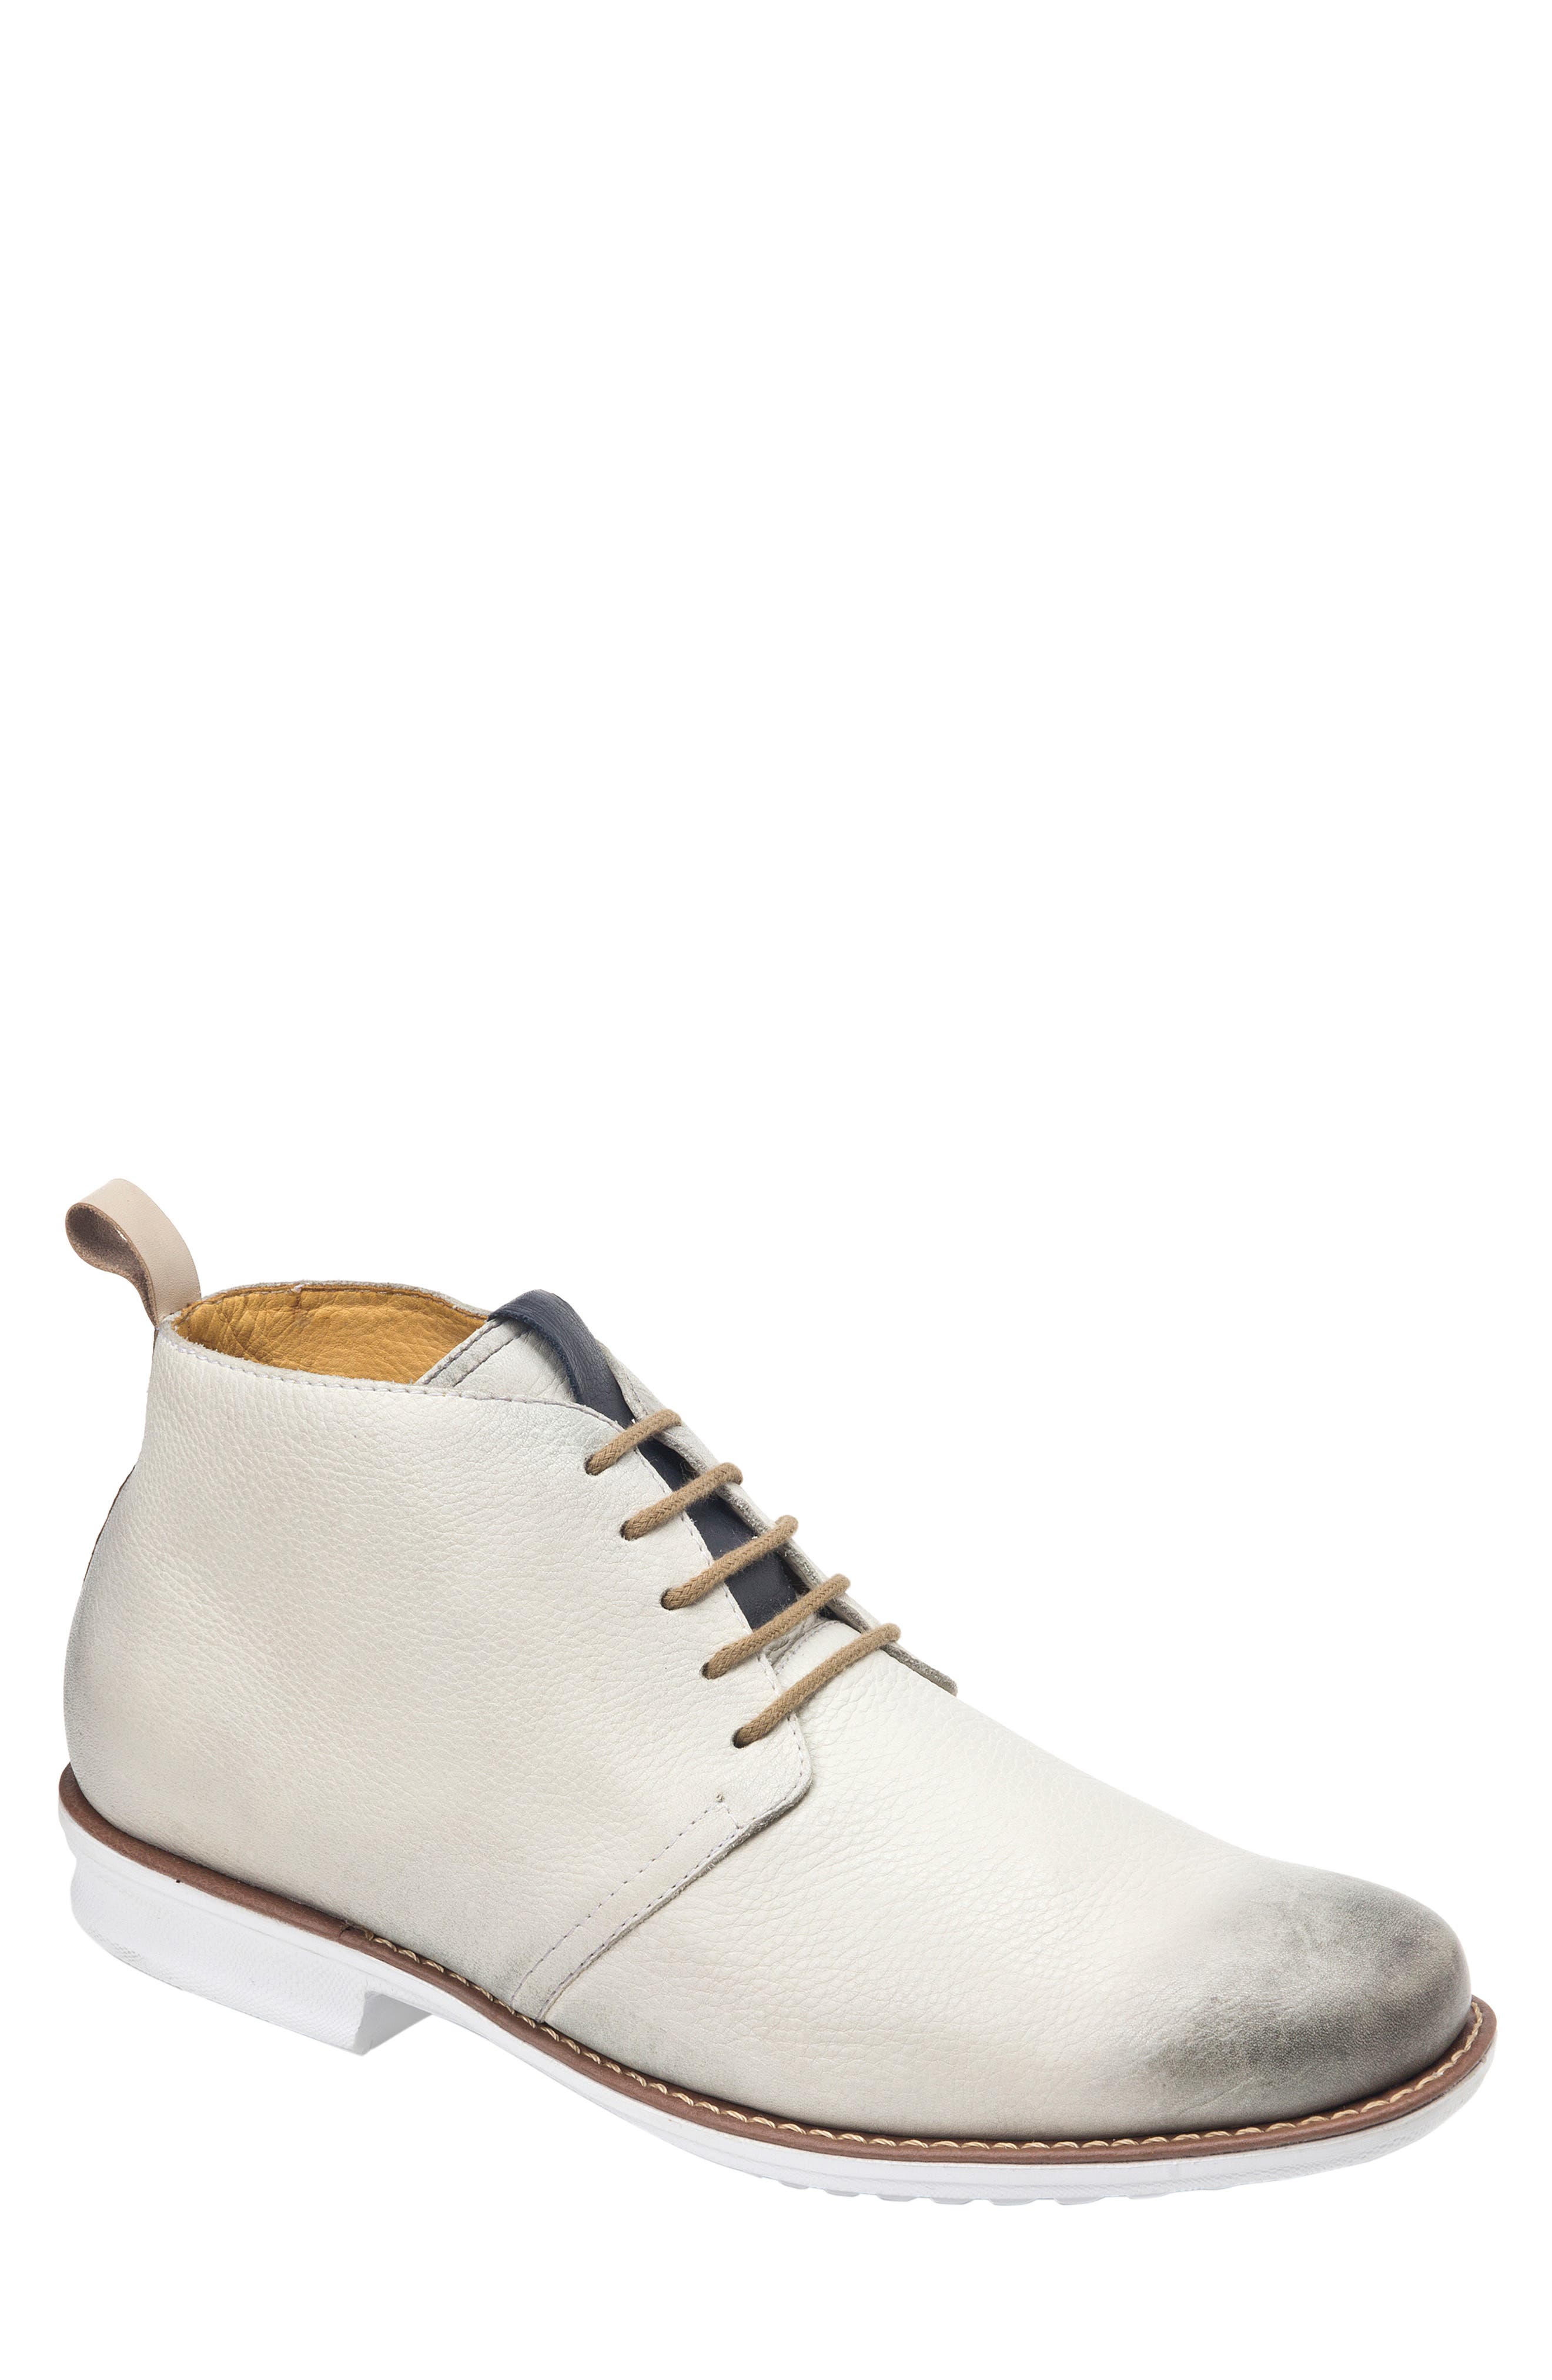 sandro moscoloni shoes zappos